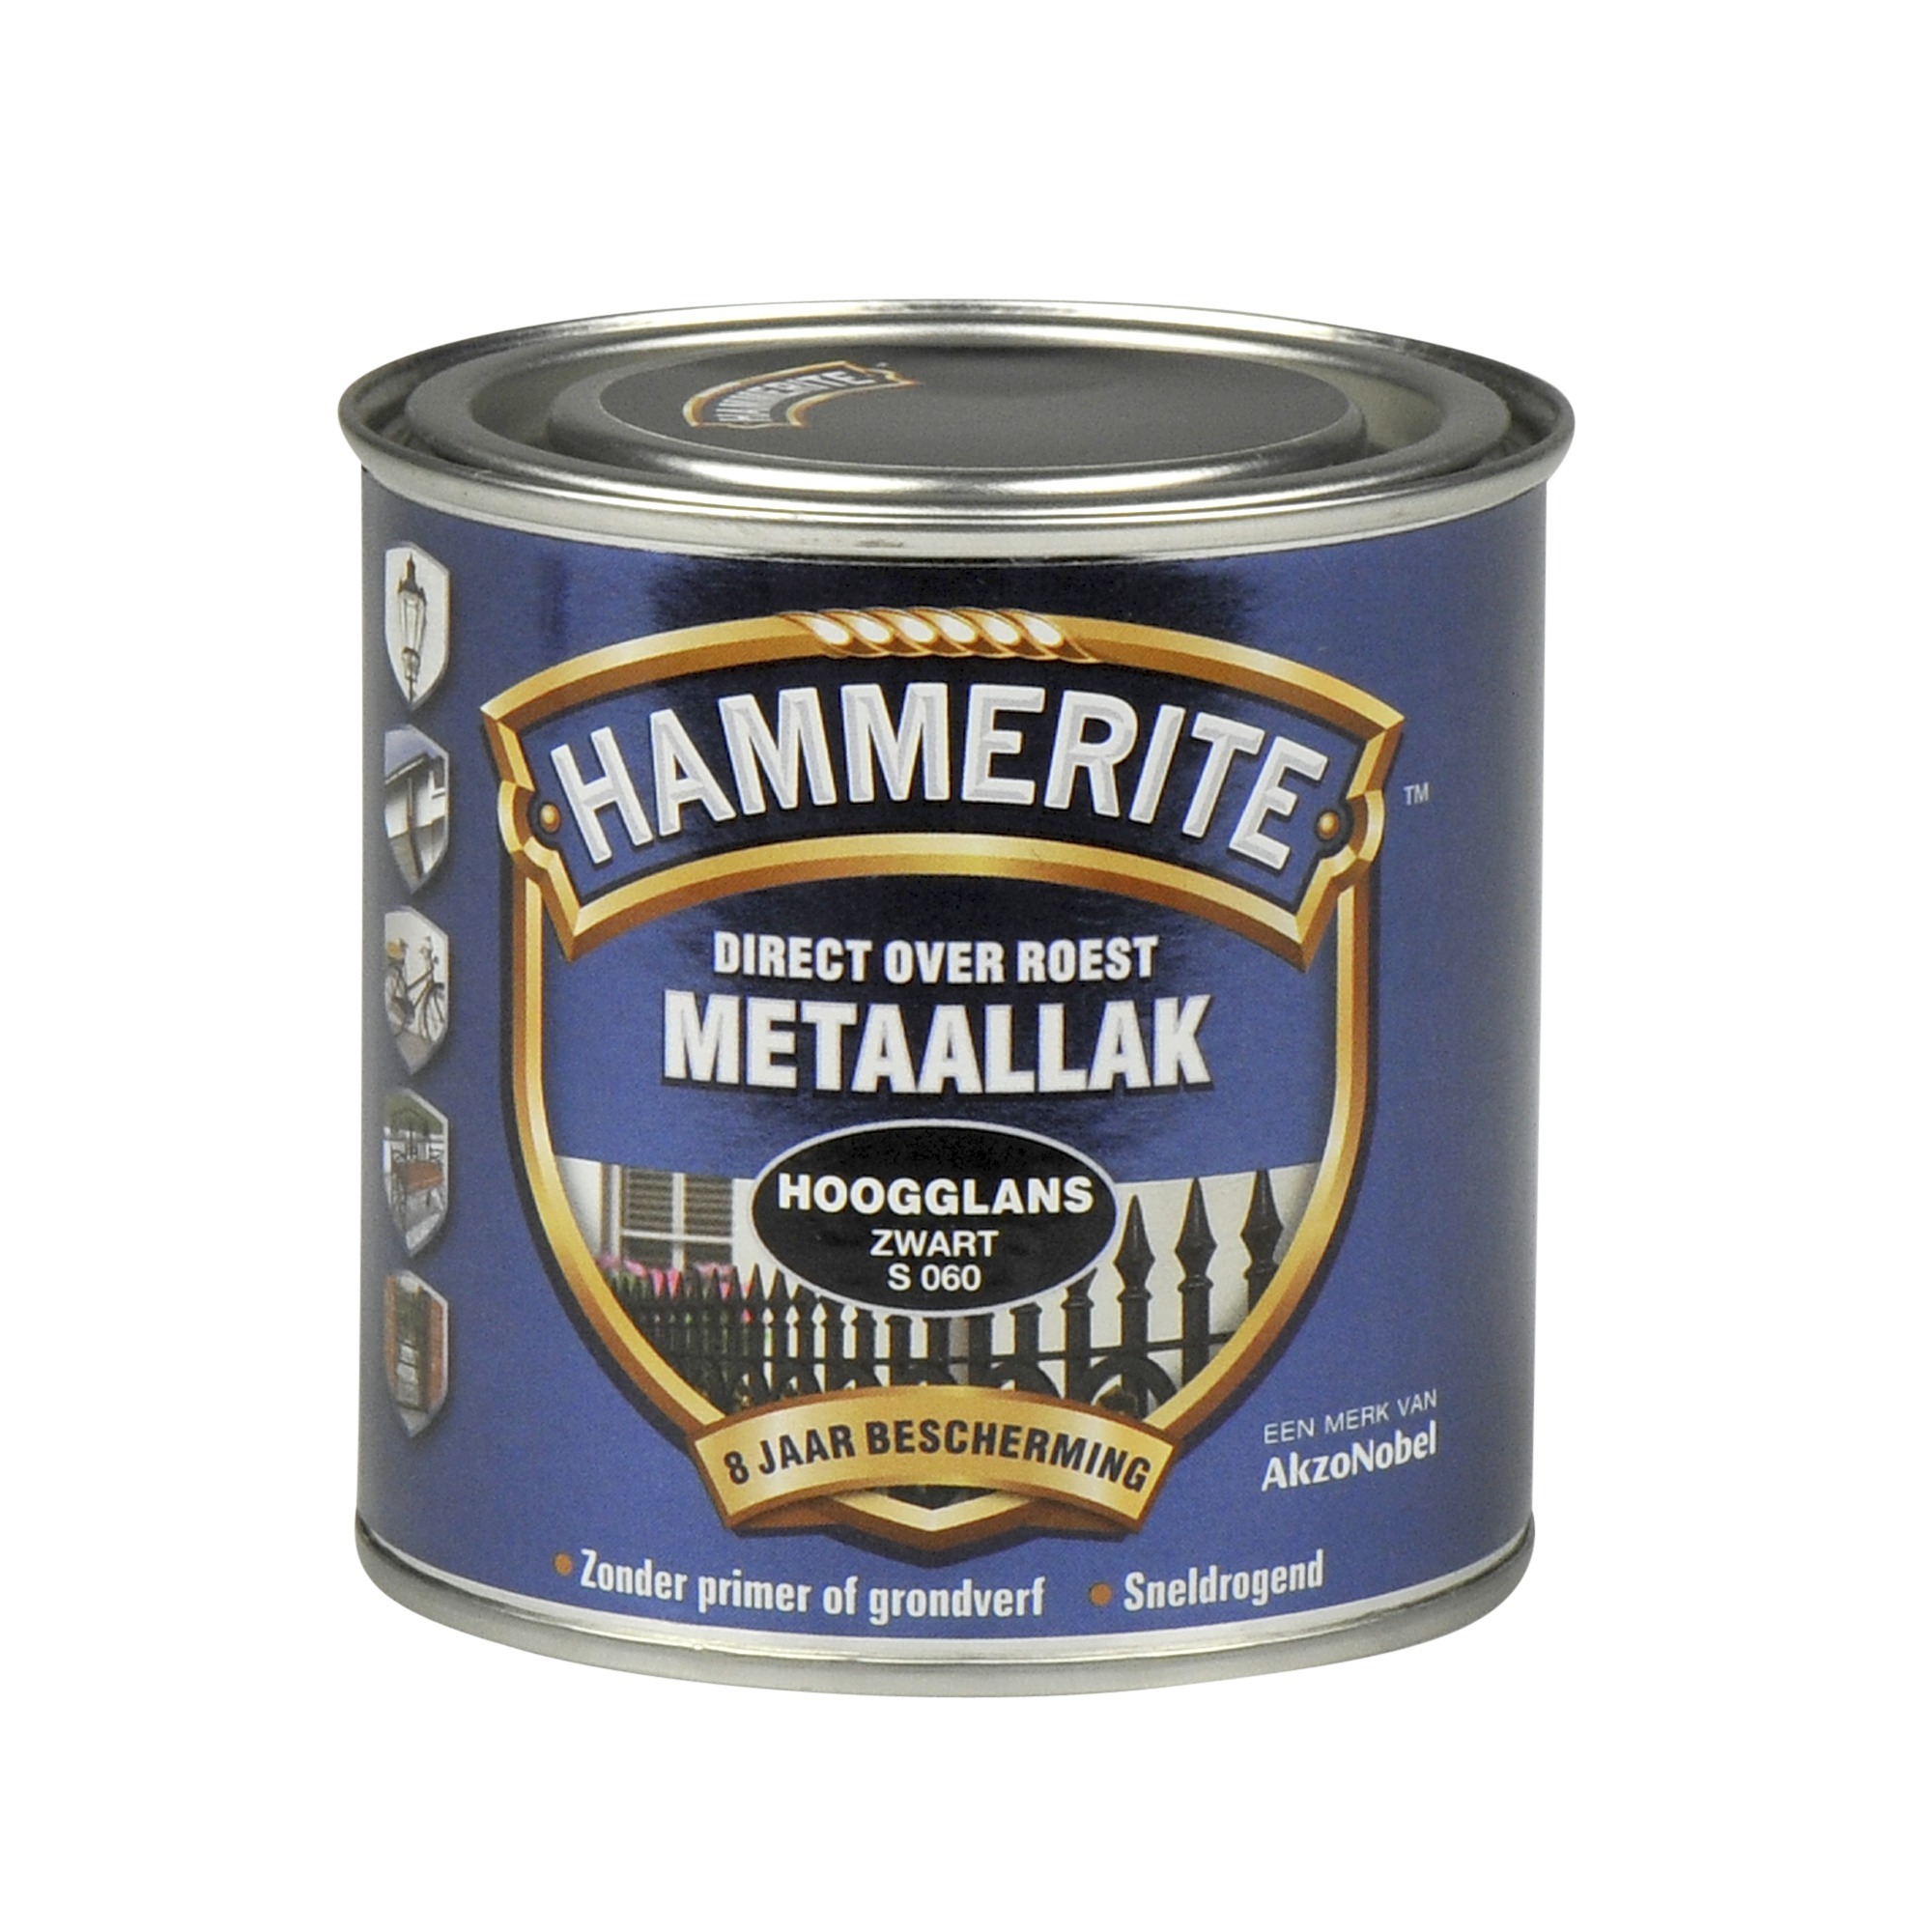 Hammerite direct over roest metaallak hoogglans zwart - 250 ml